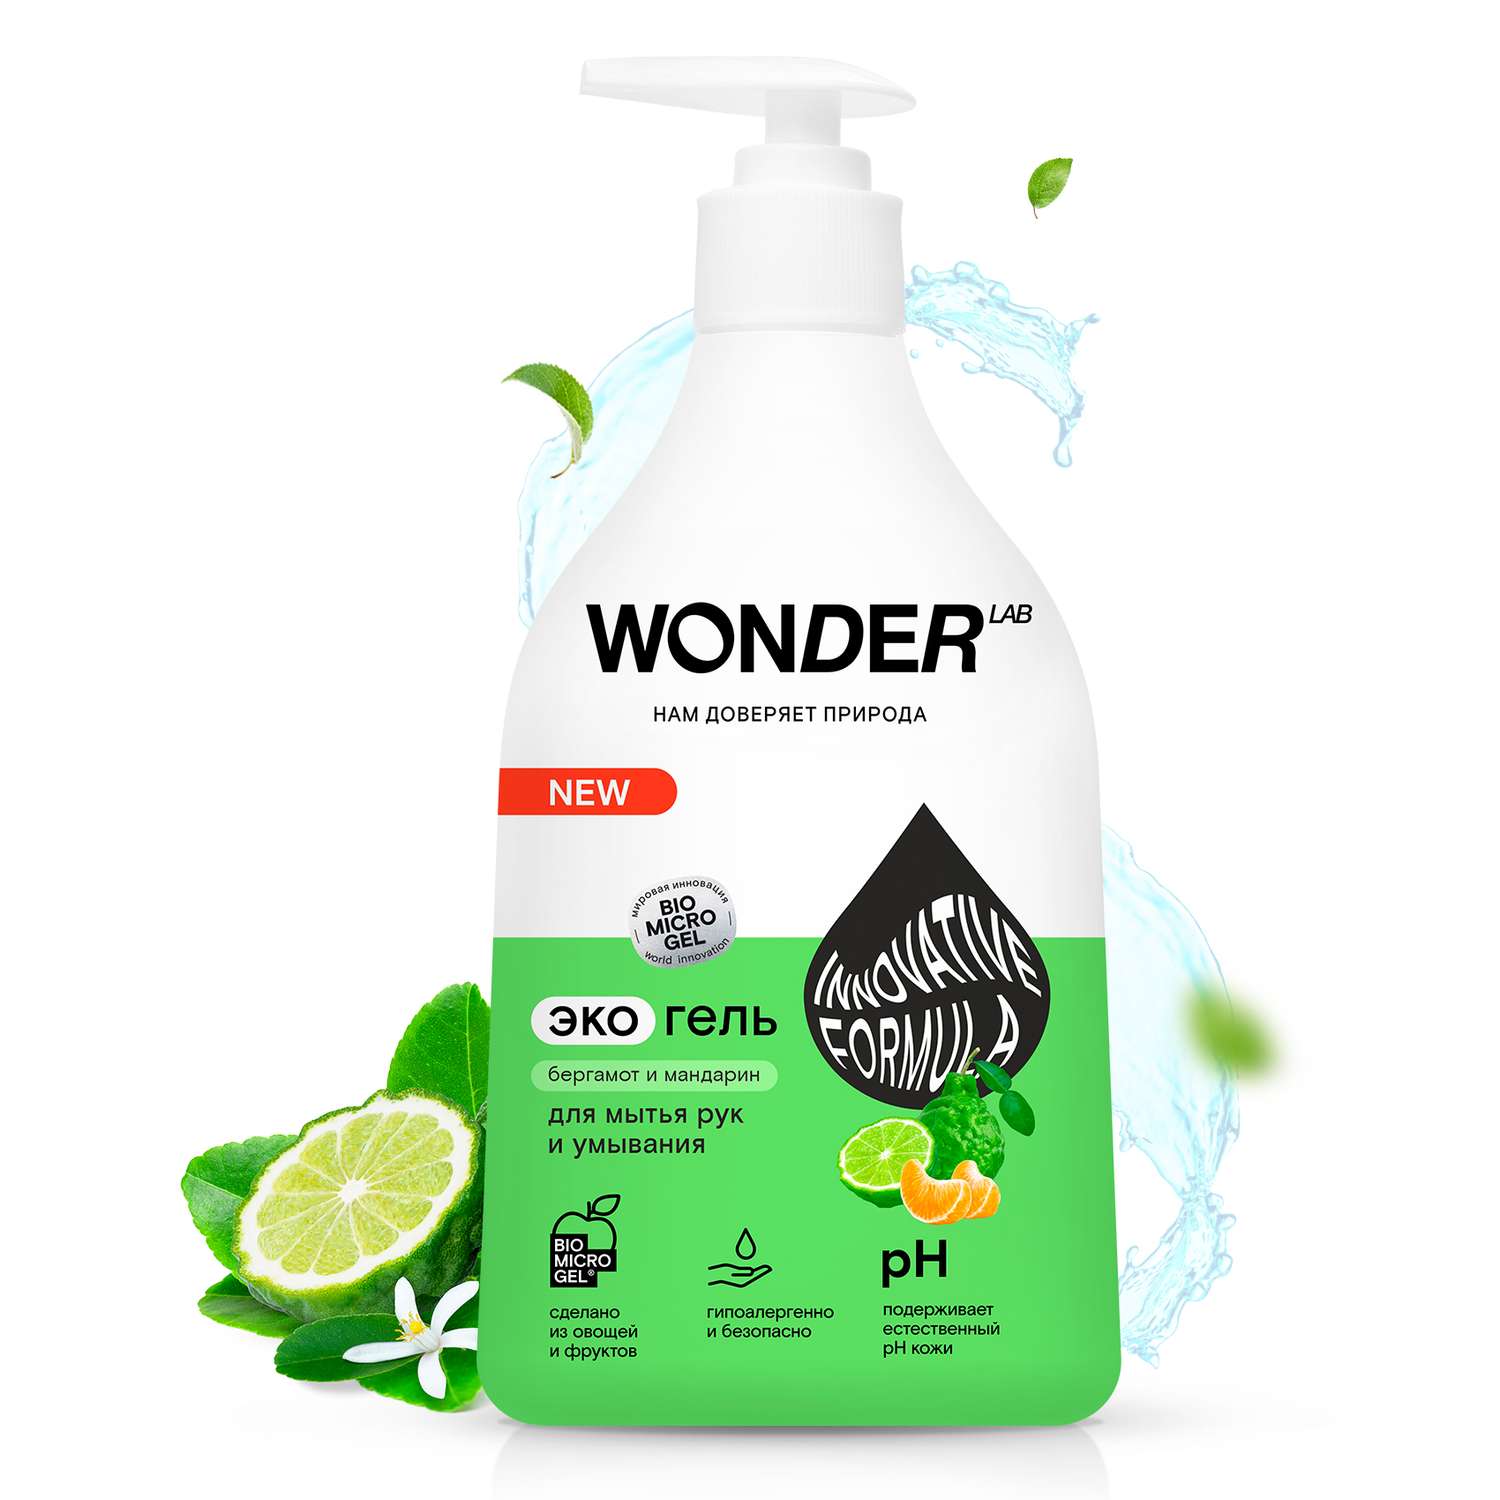 Гель для мытья рук и умывания WONDER Lab бергамот-мандарин 540мл - фото 2